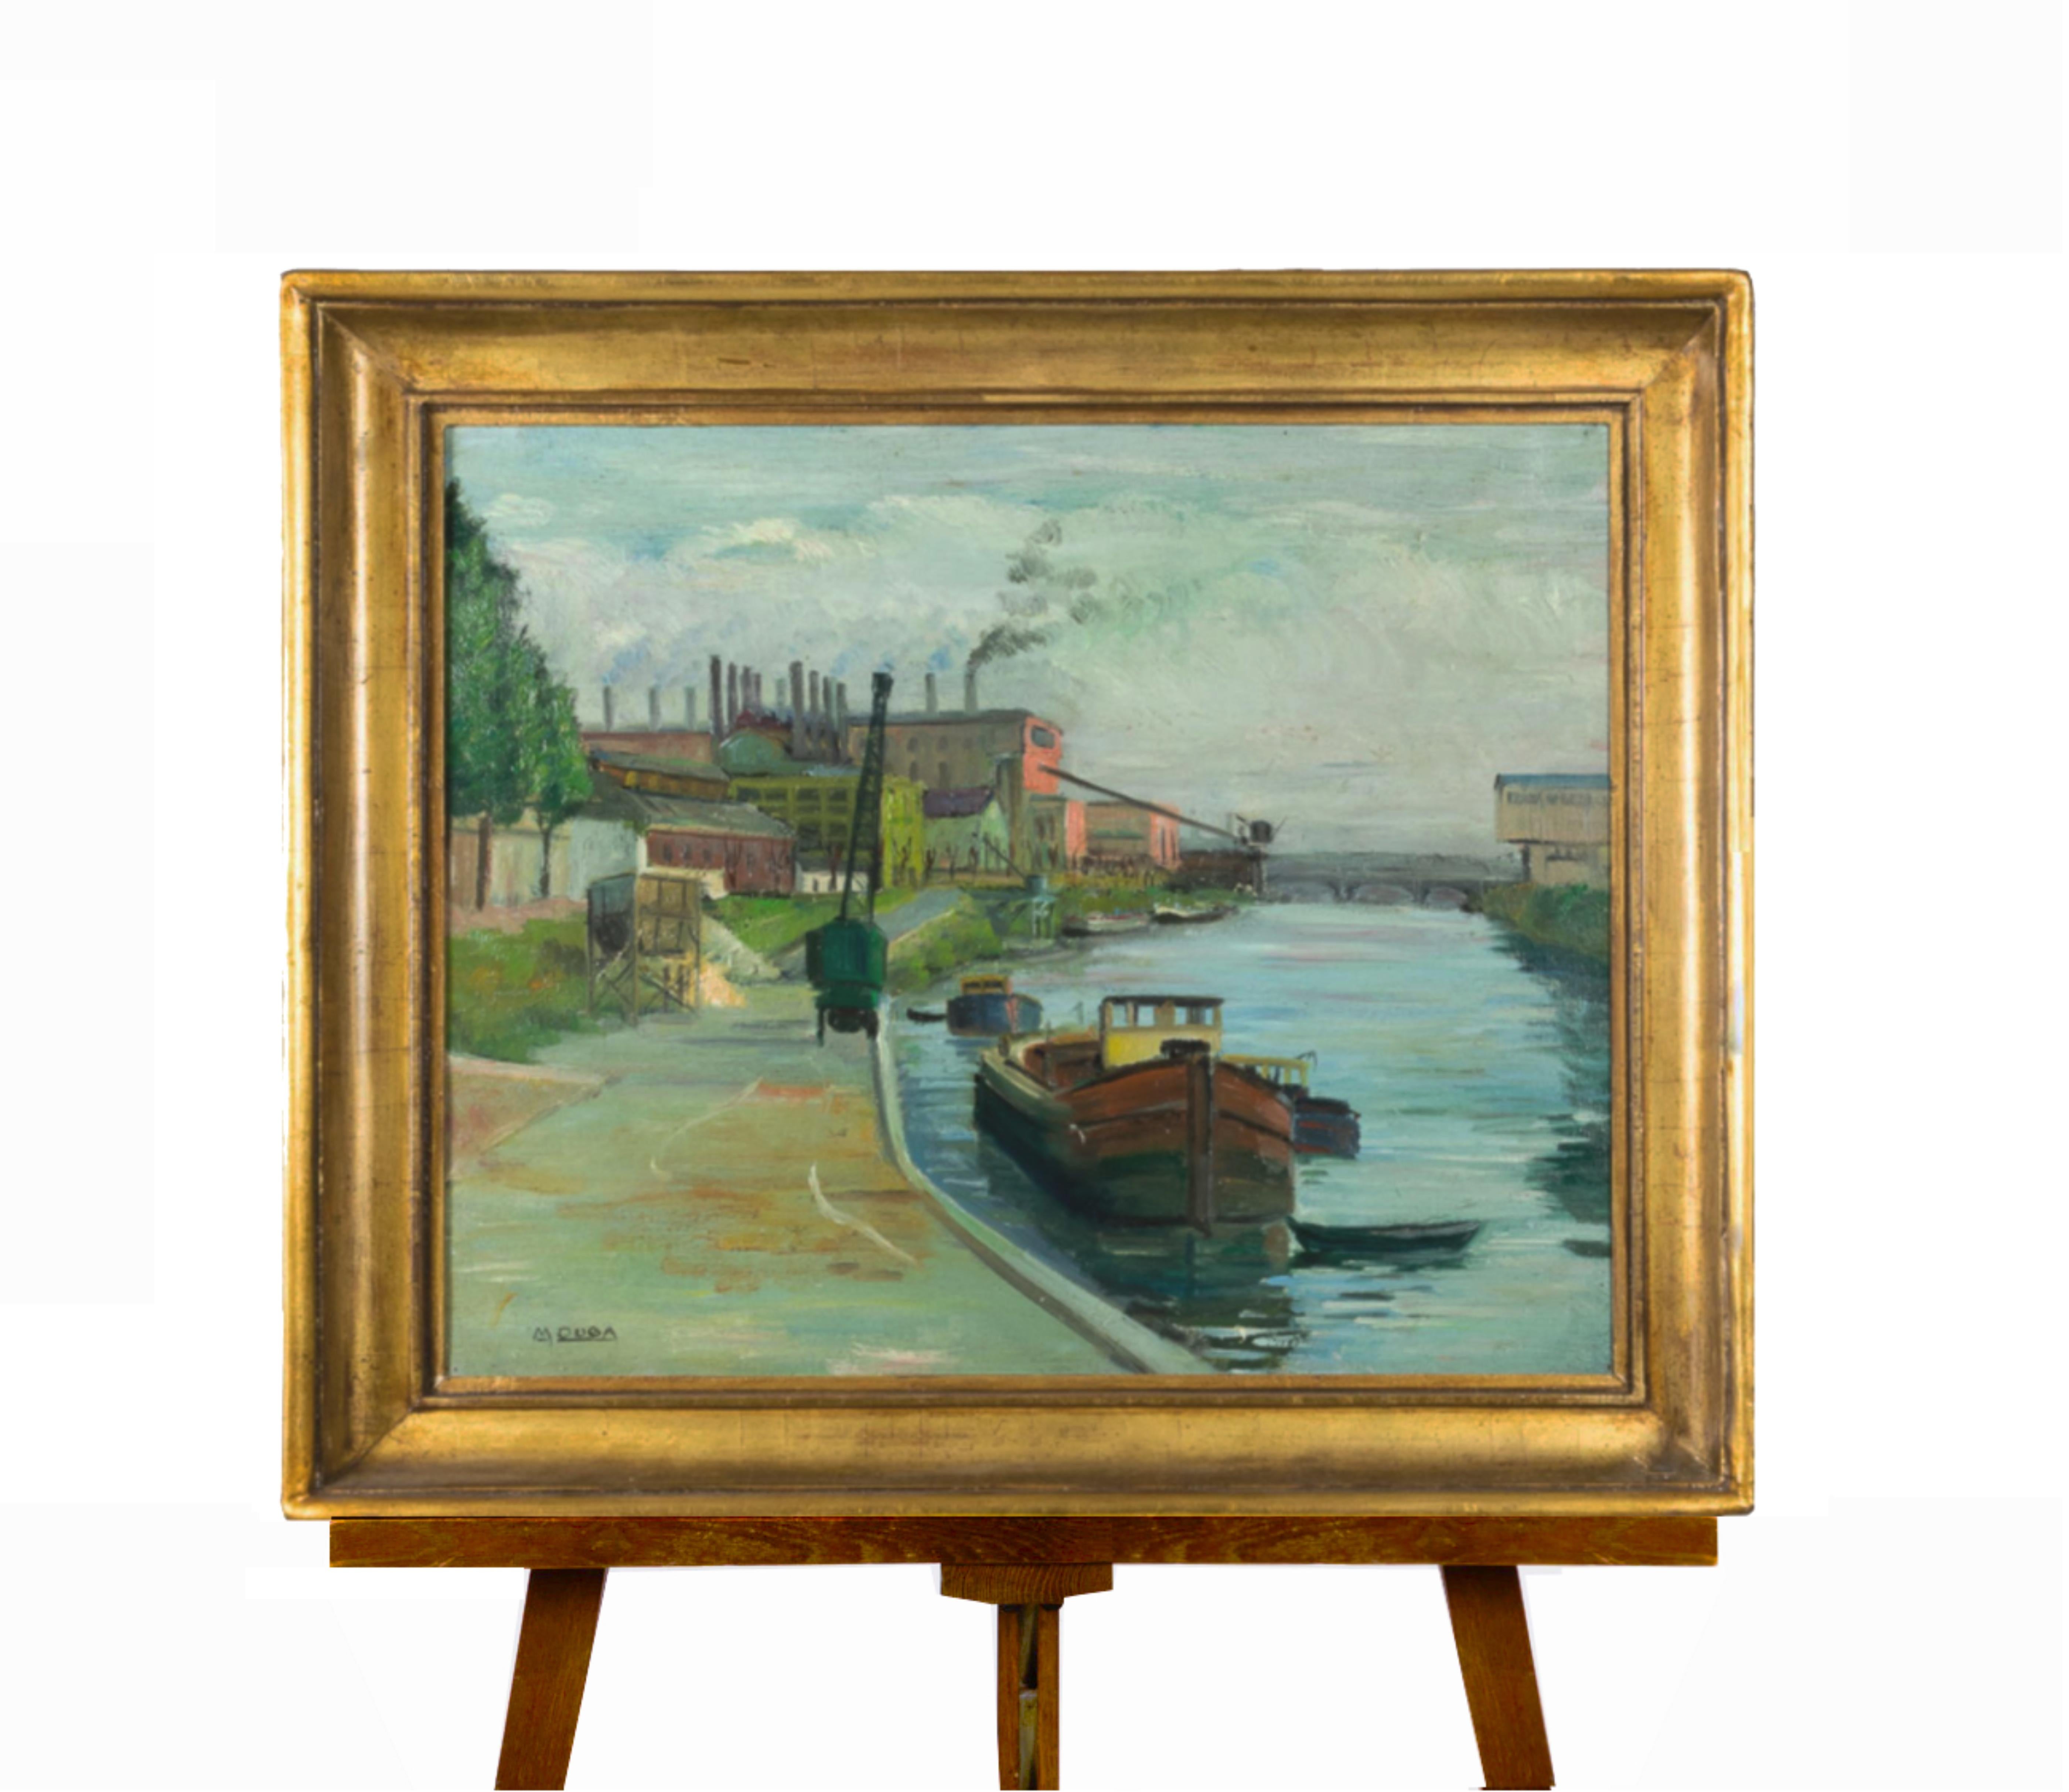 Dieses schöne postimpressionistische Gemälde zeigt ein französisches Flussschiff, das auf einem Kanal entlangfährt, während im Hintergrund eine Fabrik und eine Werft zu sehen sind. Es ist vom Künstler M Duba in der Ecke signiert, wie auf den Fotos